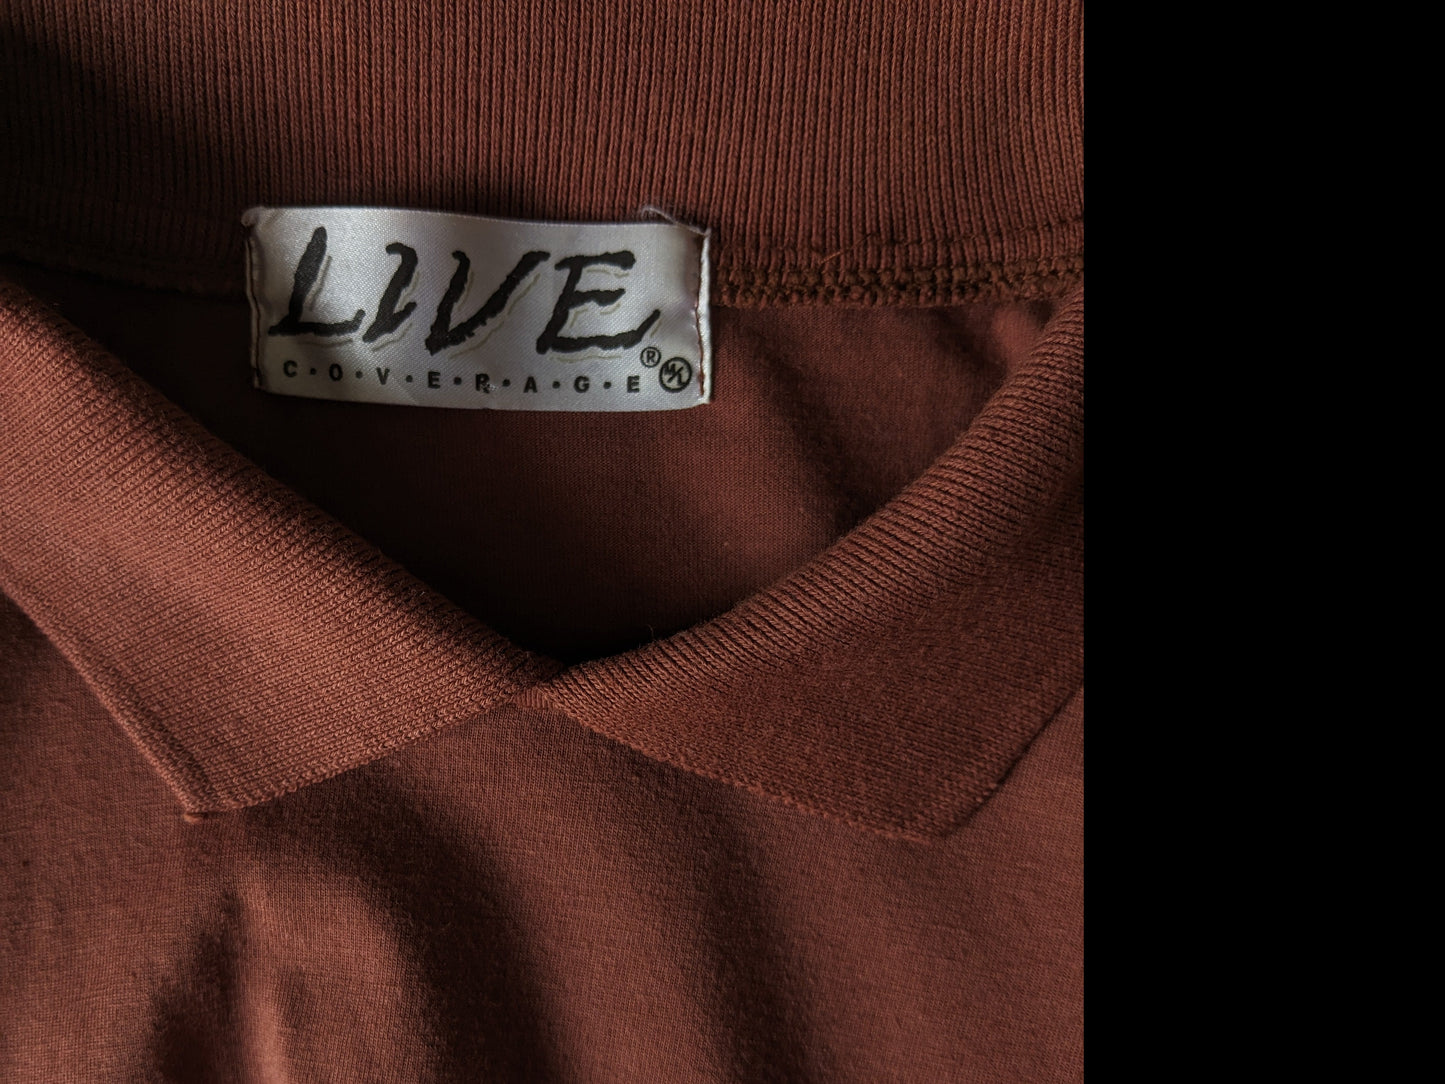 Polo de couverture en direct vintage avec collier séparé. De couleur marron. Taille M.